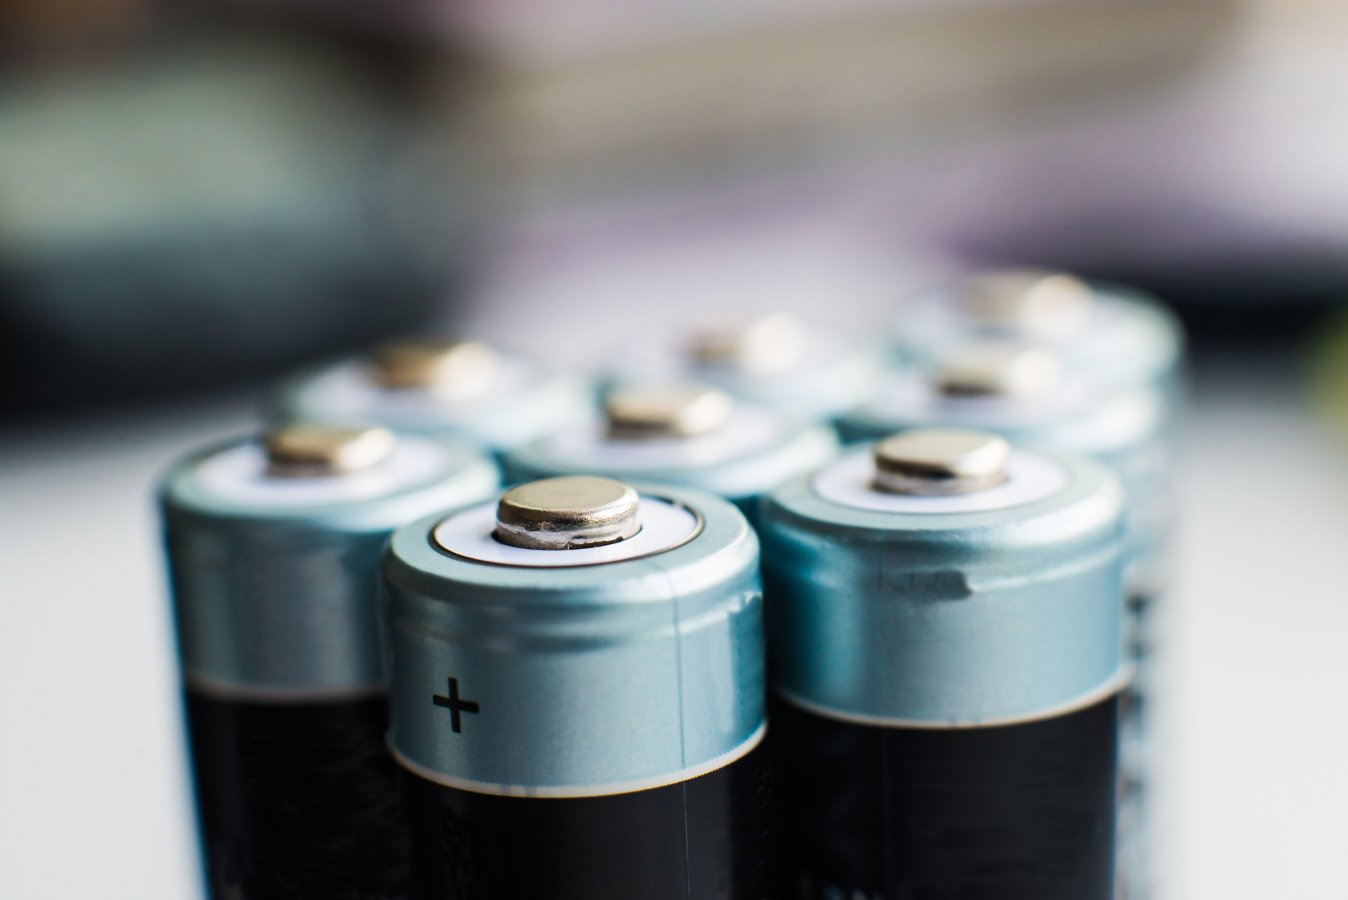 Is jouw bedrijf in orde met de wettelijke aanvaardingsplicht voor batterijen?